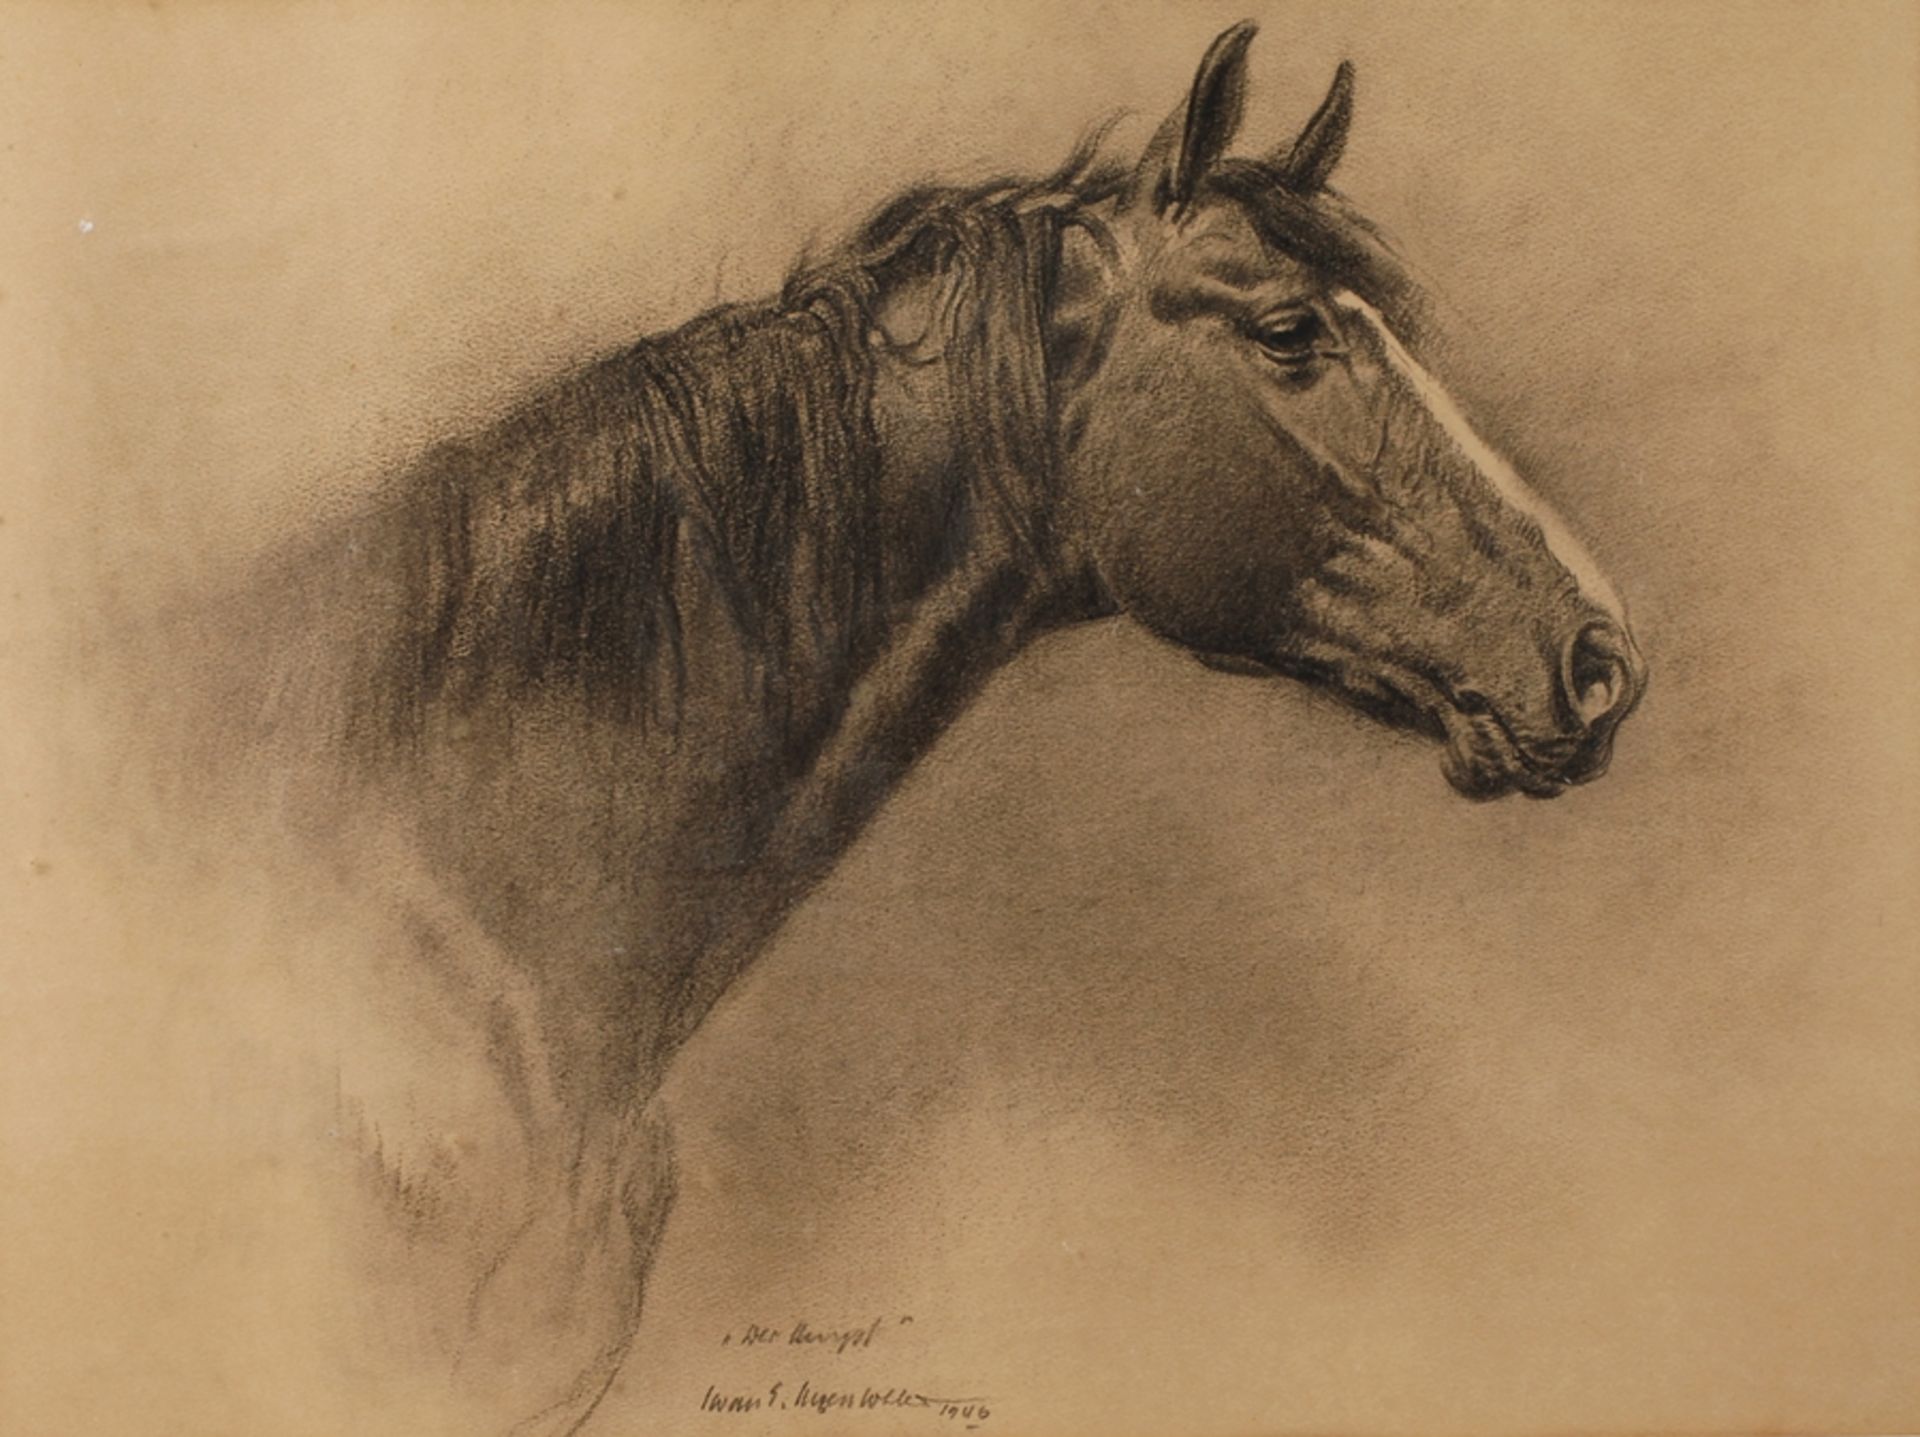 Iwan E. Hugentobler, "Der Hengst"fein naturalistisch ausgeführtes Pferdekopfportrait, Hugentobler